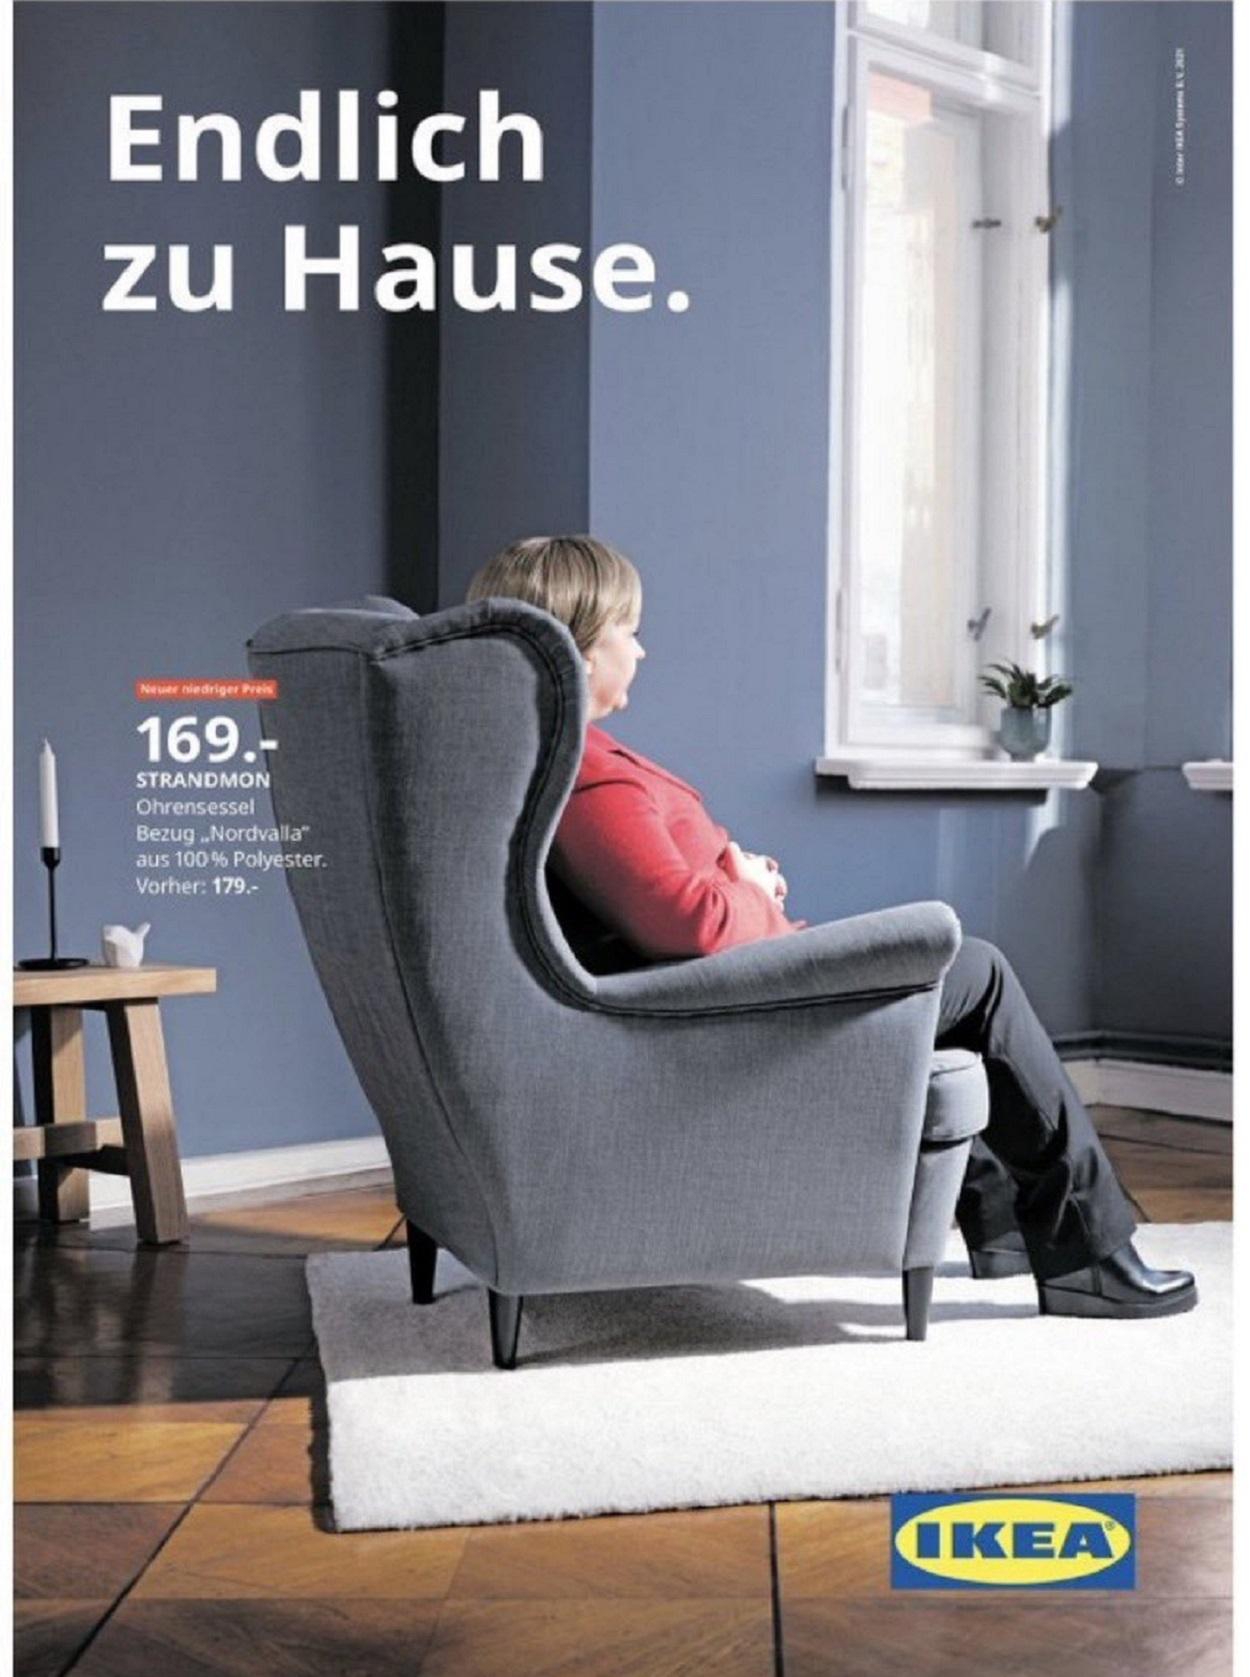 Ikea anuncia un sofá en el que parece que está sentada Angela Merkel el día en el que abandona el cargo. Twitter